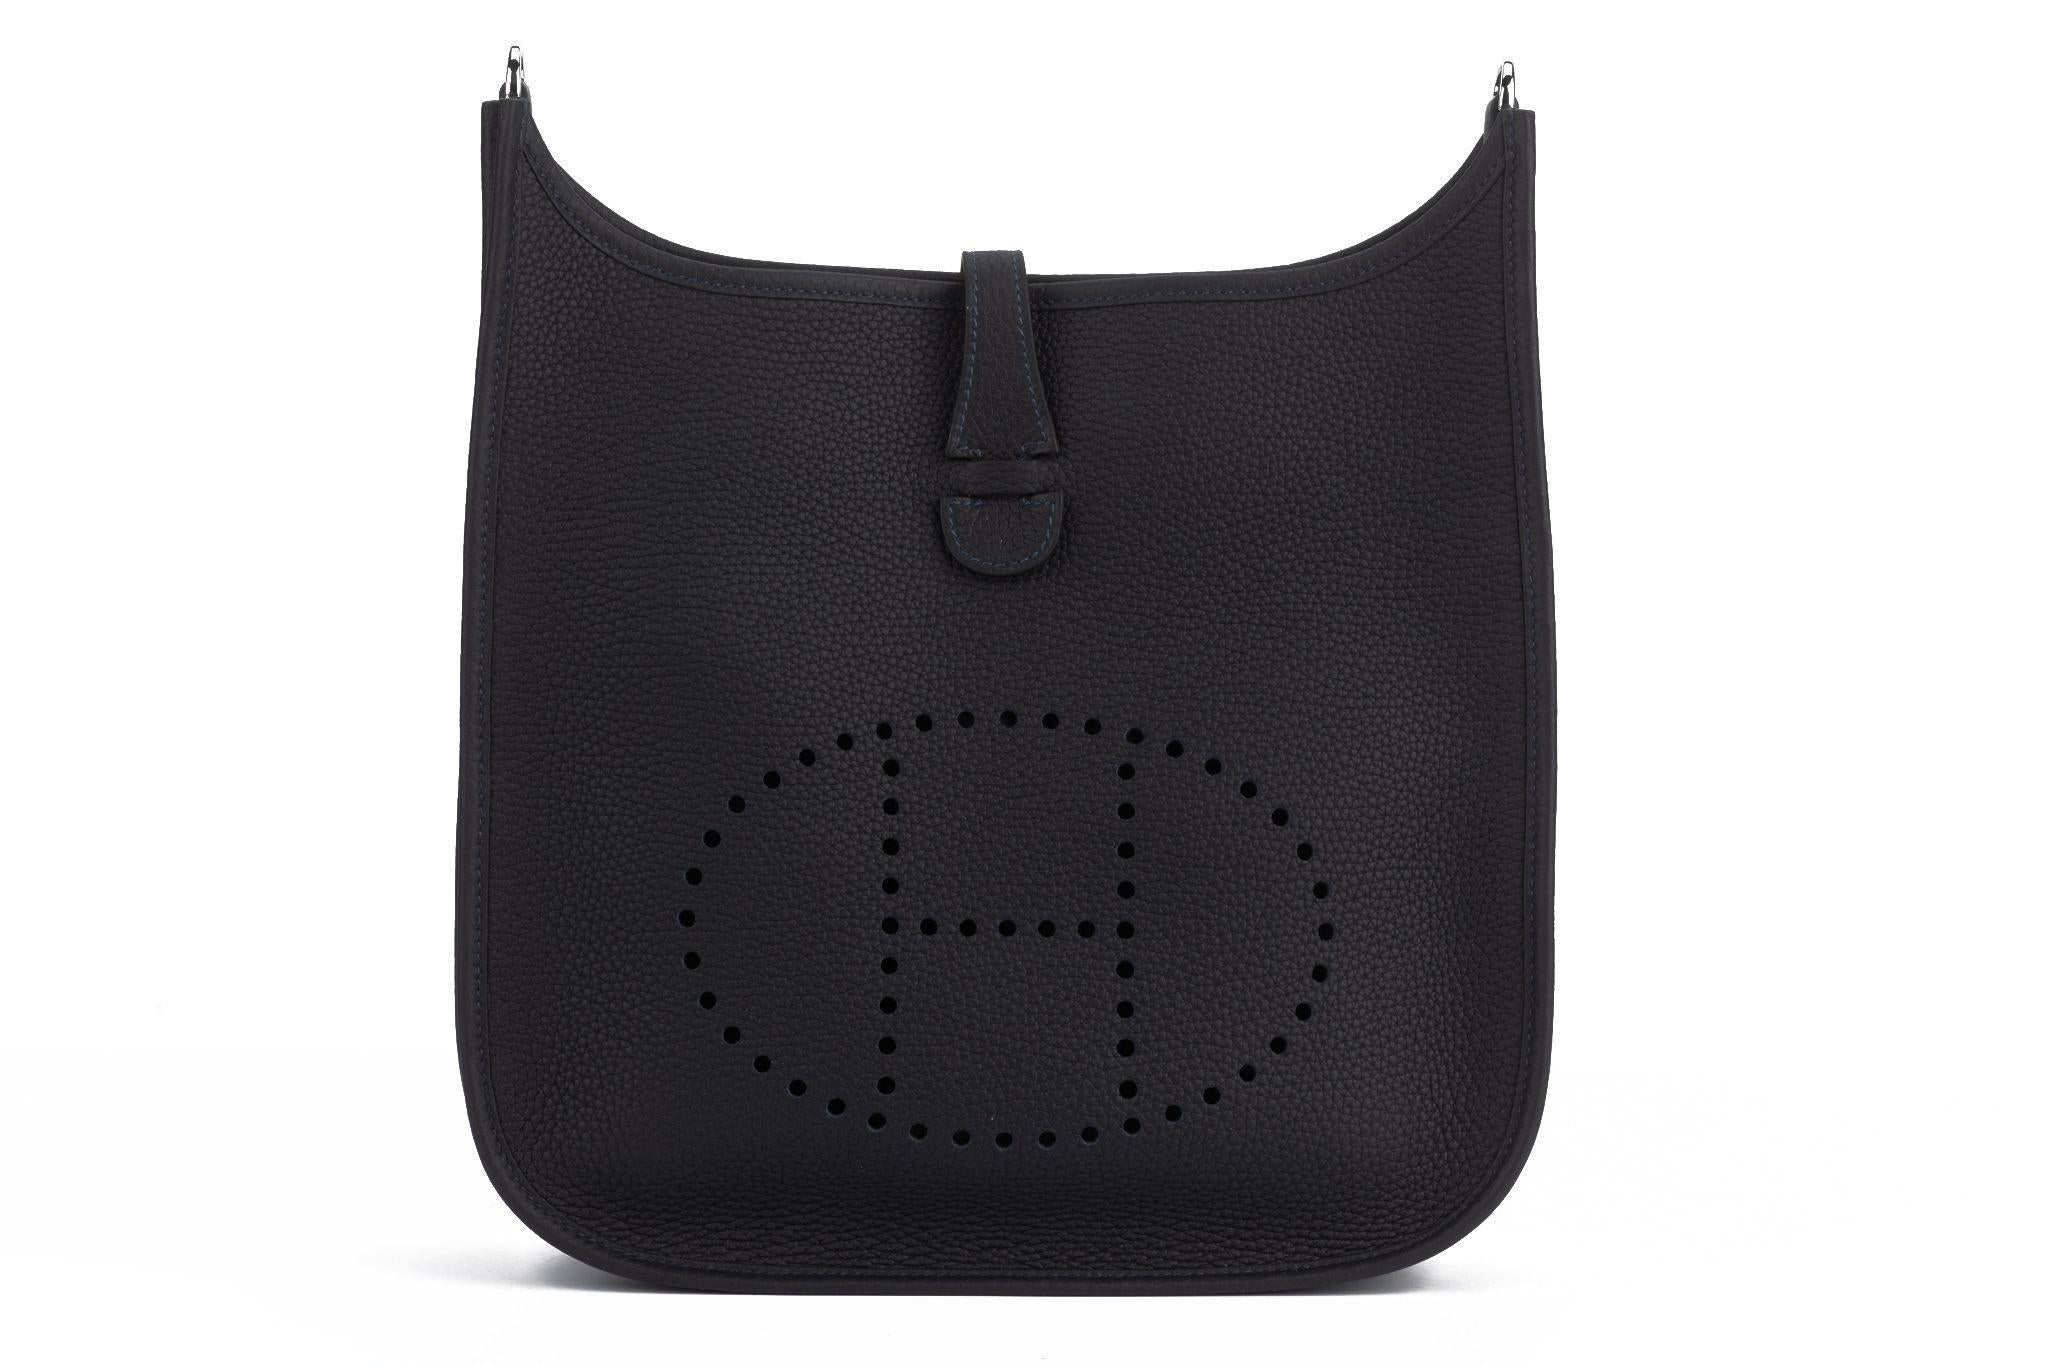 Hermès brandneue schwarze Taurillon Clemence Evelyne PM mit Kontrastband. 
Abnehmbarer und verstellbarer Schulterriemen 19,5